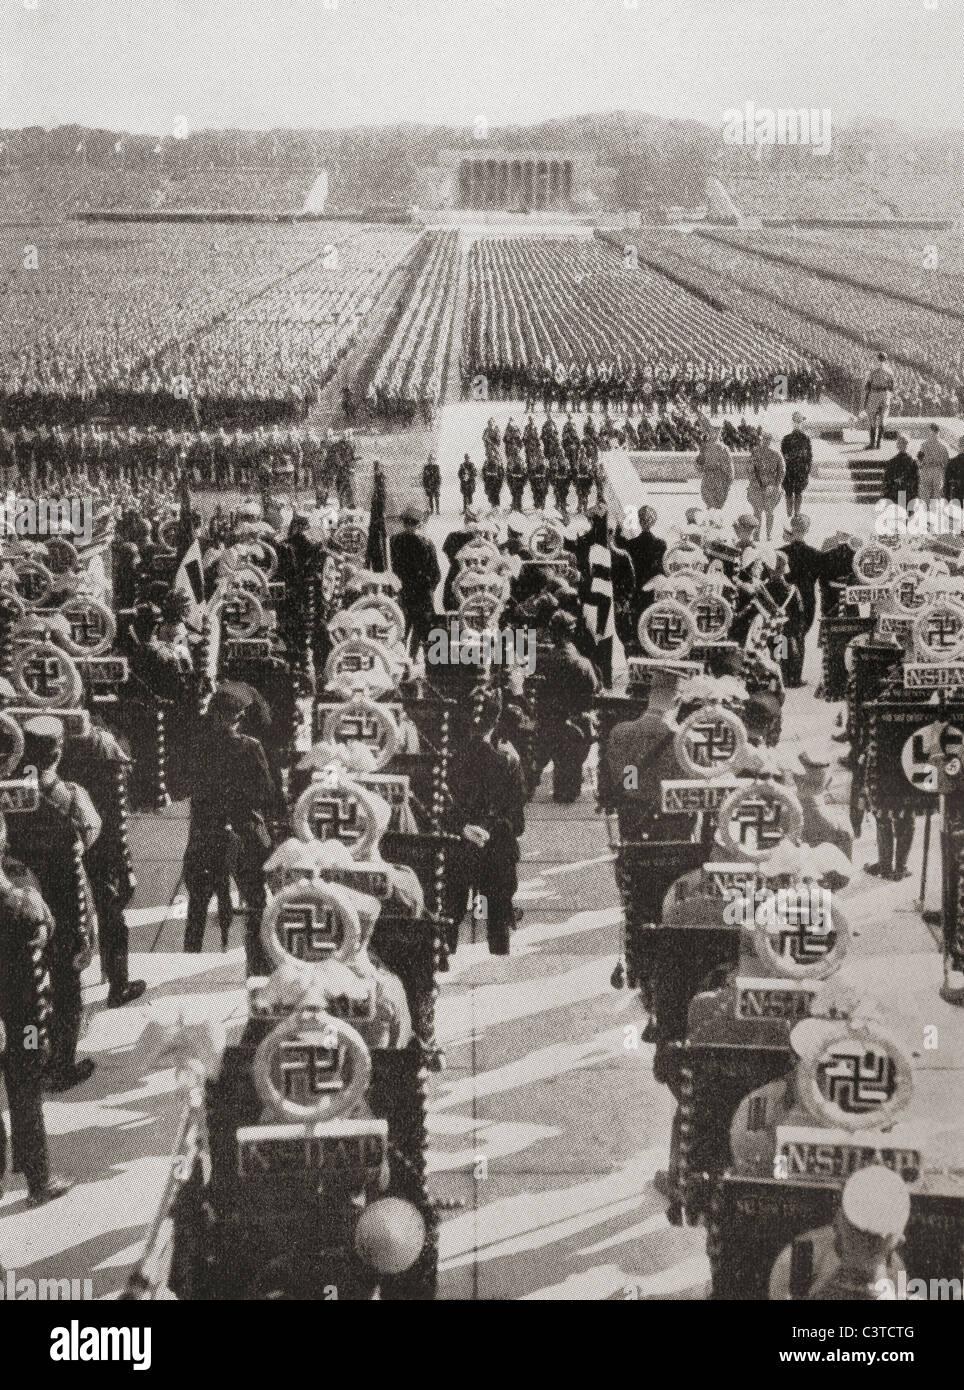 Übersicht über die Masse Appell von SA, SS und NSKK Truppen an der 1935 Nazi Party Tag, Luitpold-Arena, Nürnberg, Deutschland. Stockfoto